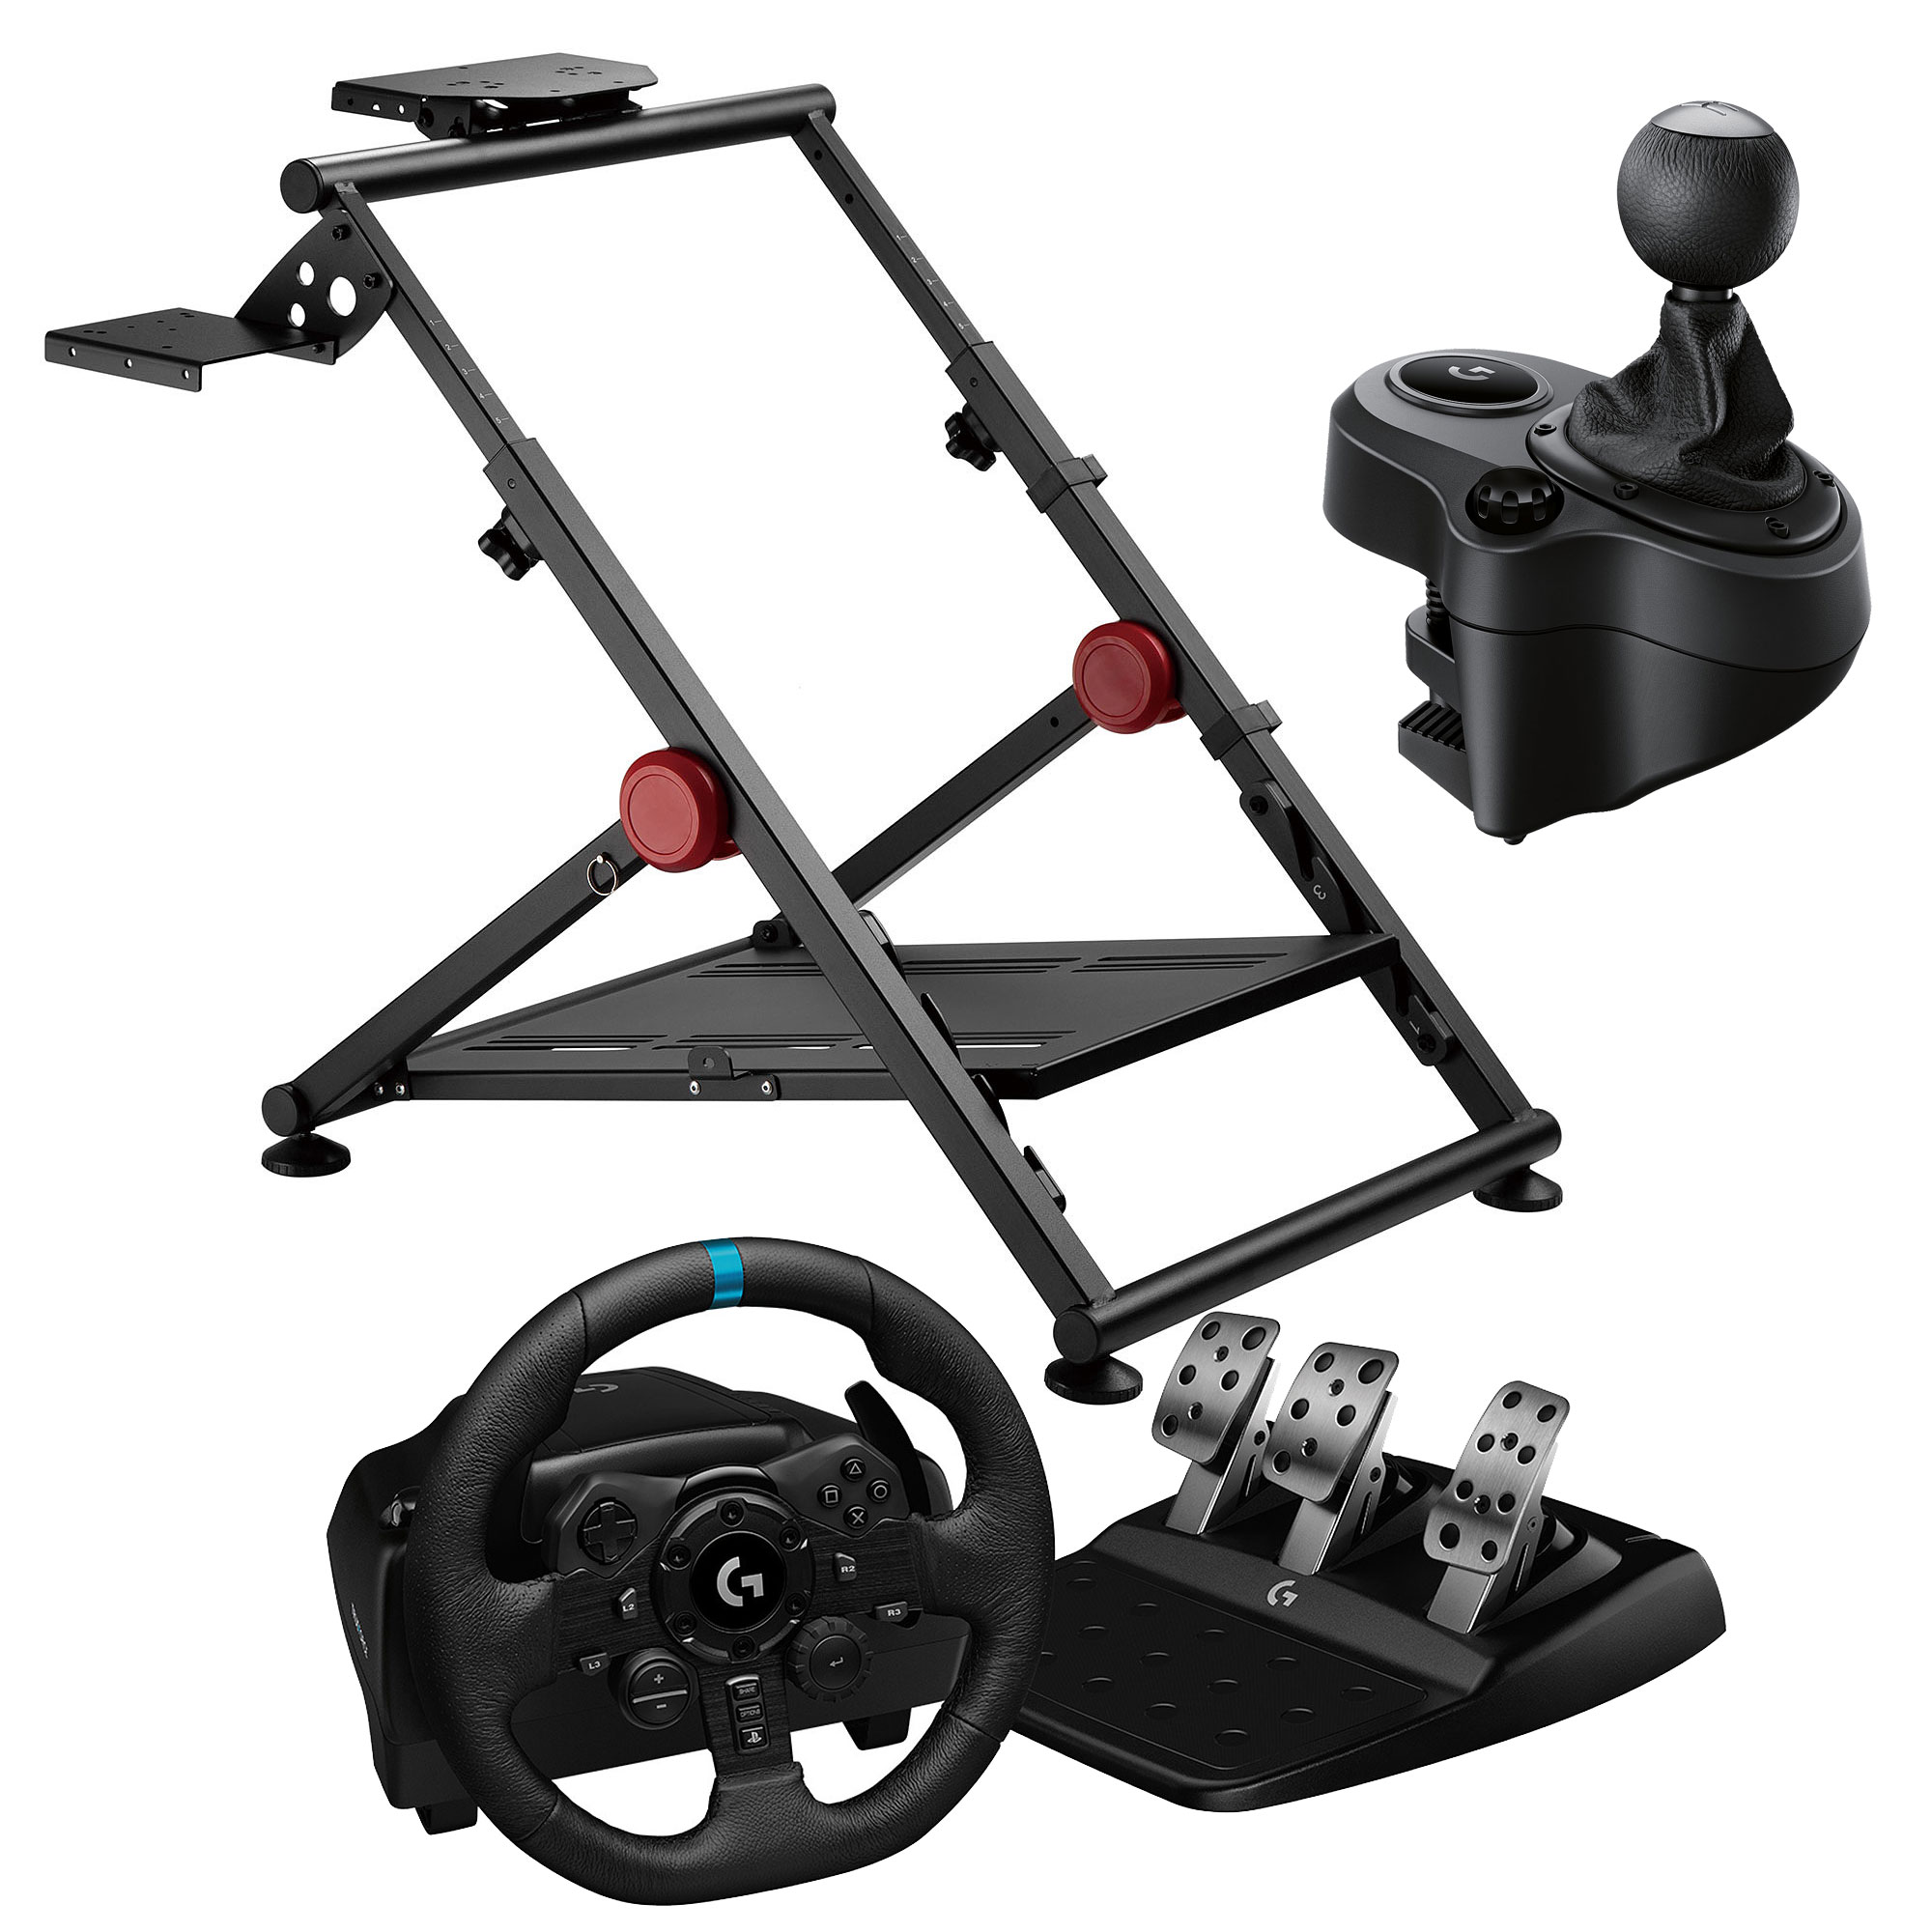 Wheel stand GT - Support Universel pour Volant, pédalier et boite